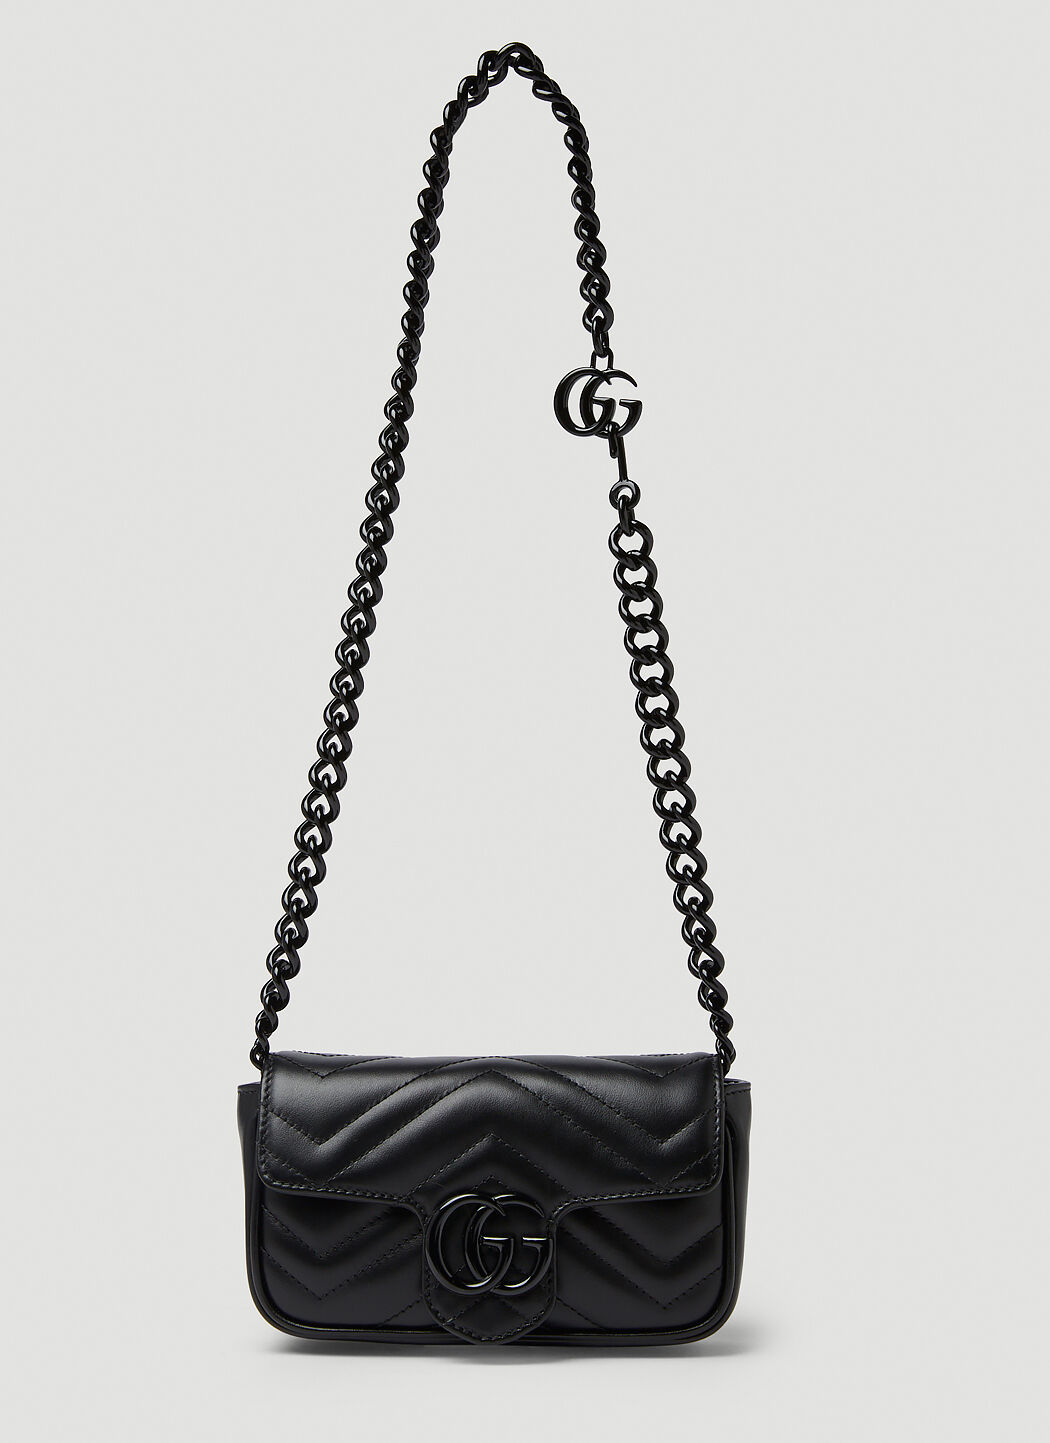 Vivienne Westwood GG Marmont 2.0 Belt Bag Black vvw0256011